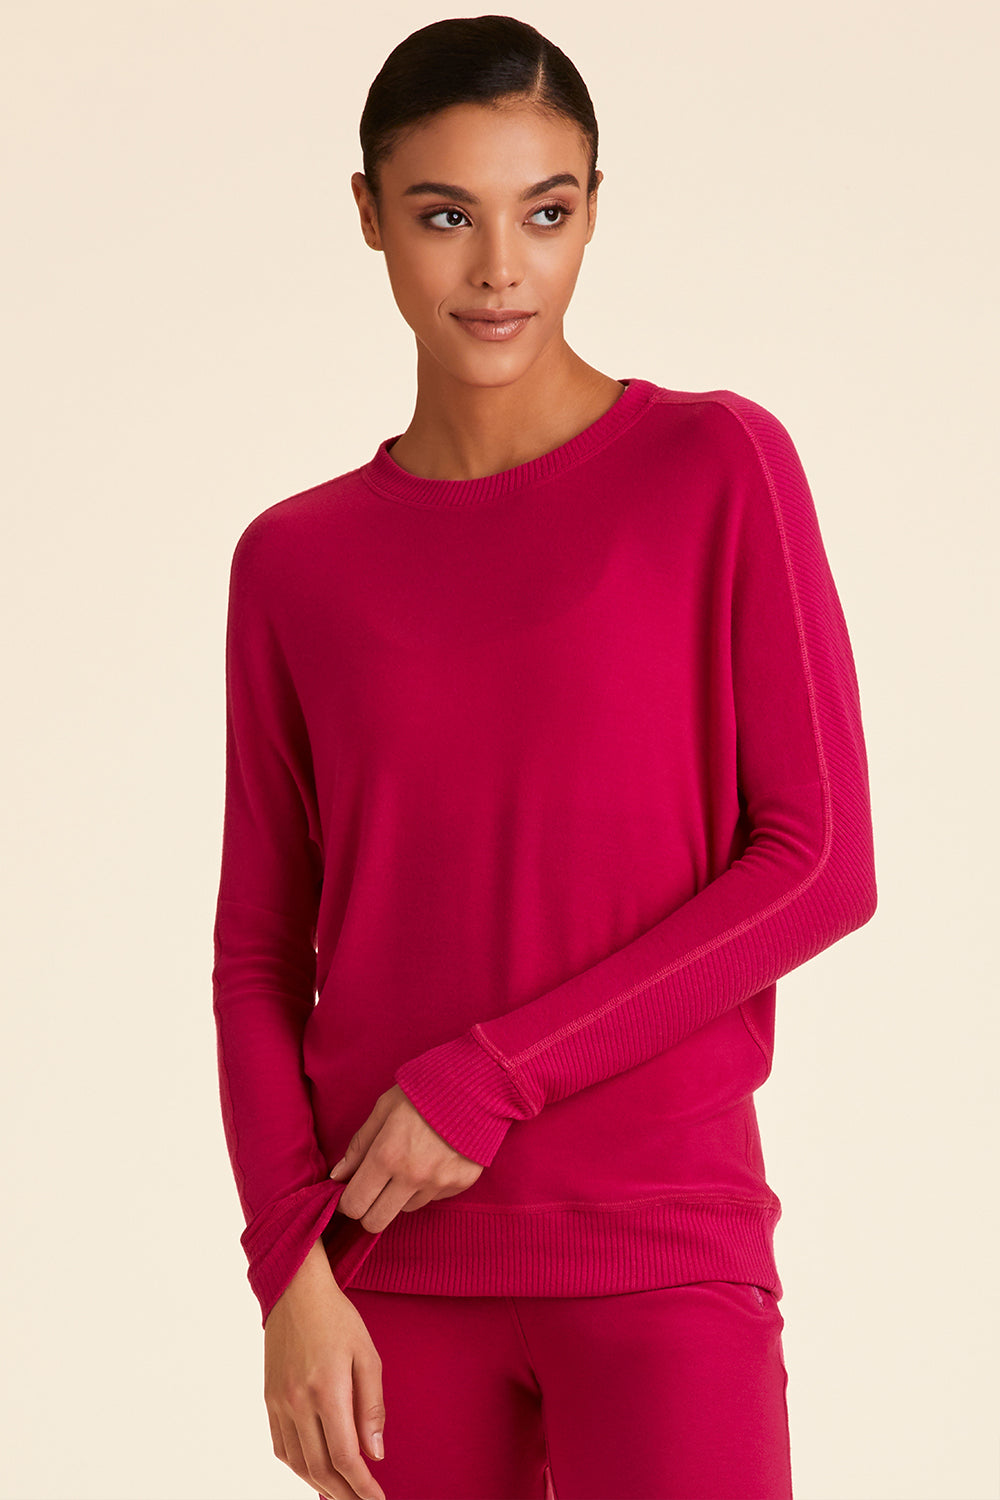 Alala women's rise sweatshirt in raspberry